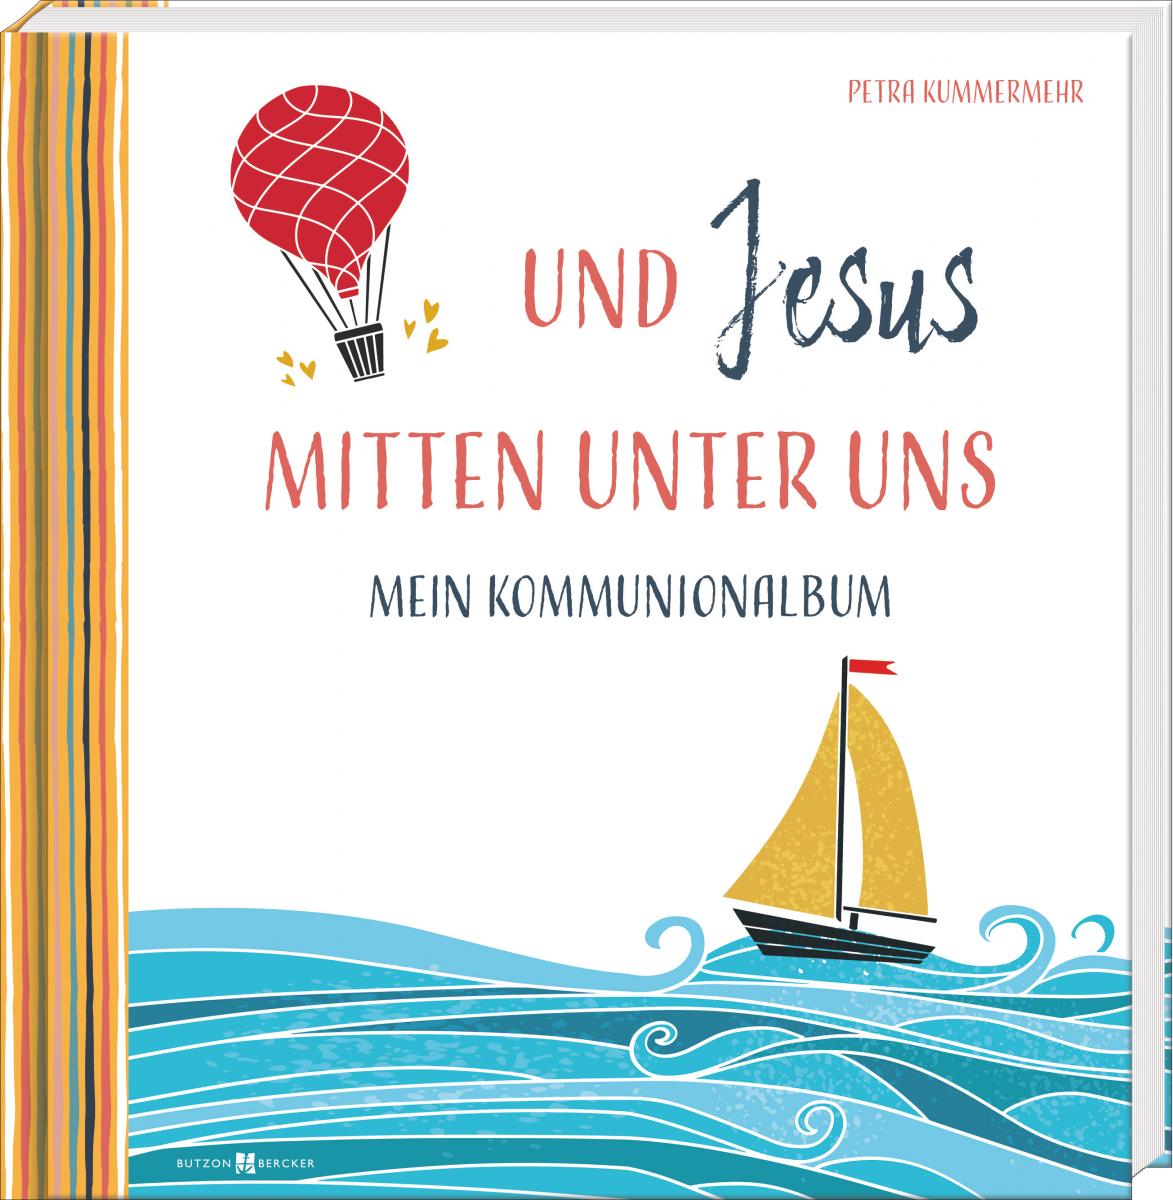 Kommunionalbum - Und Jesus mitten unter uns